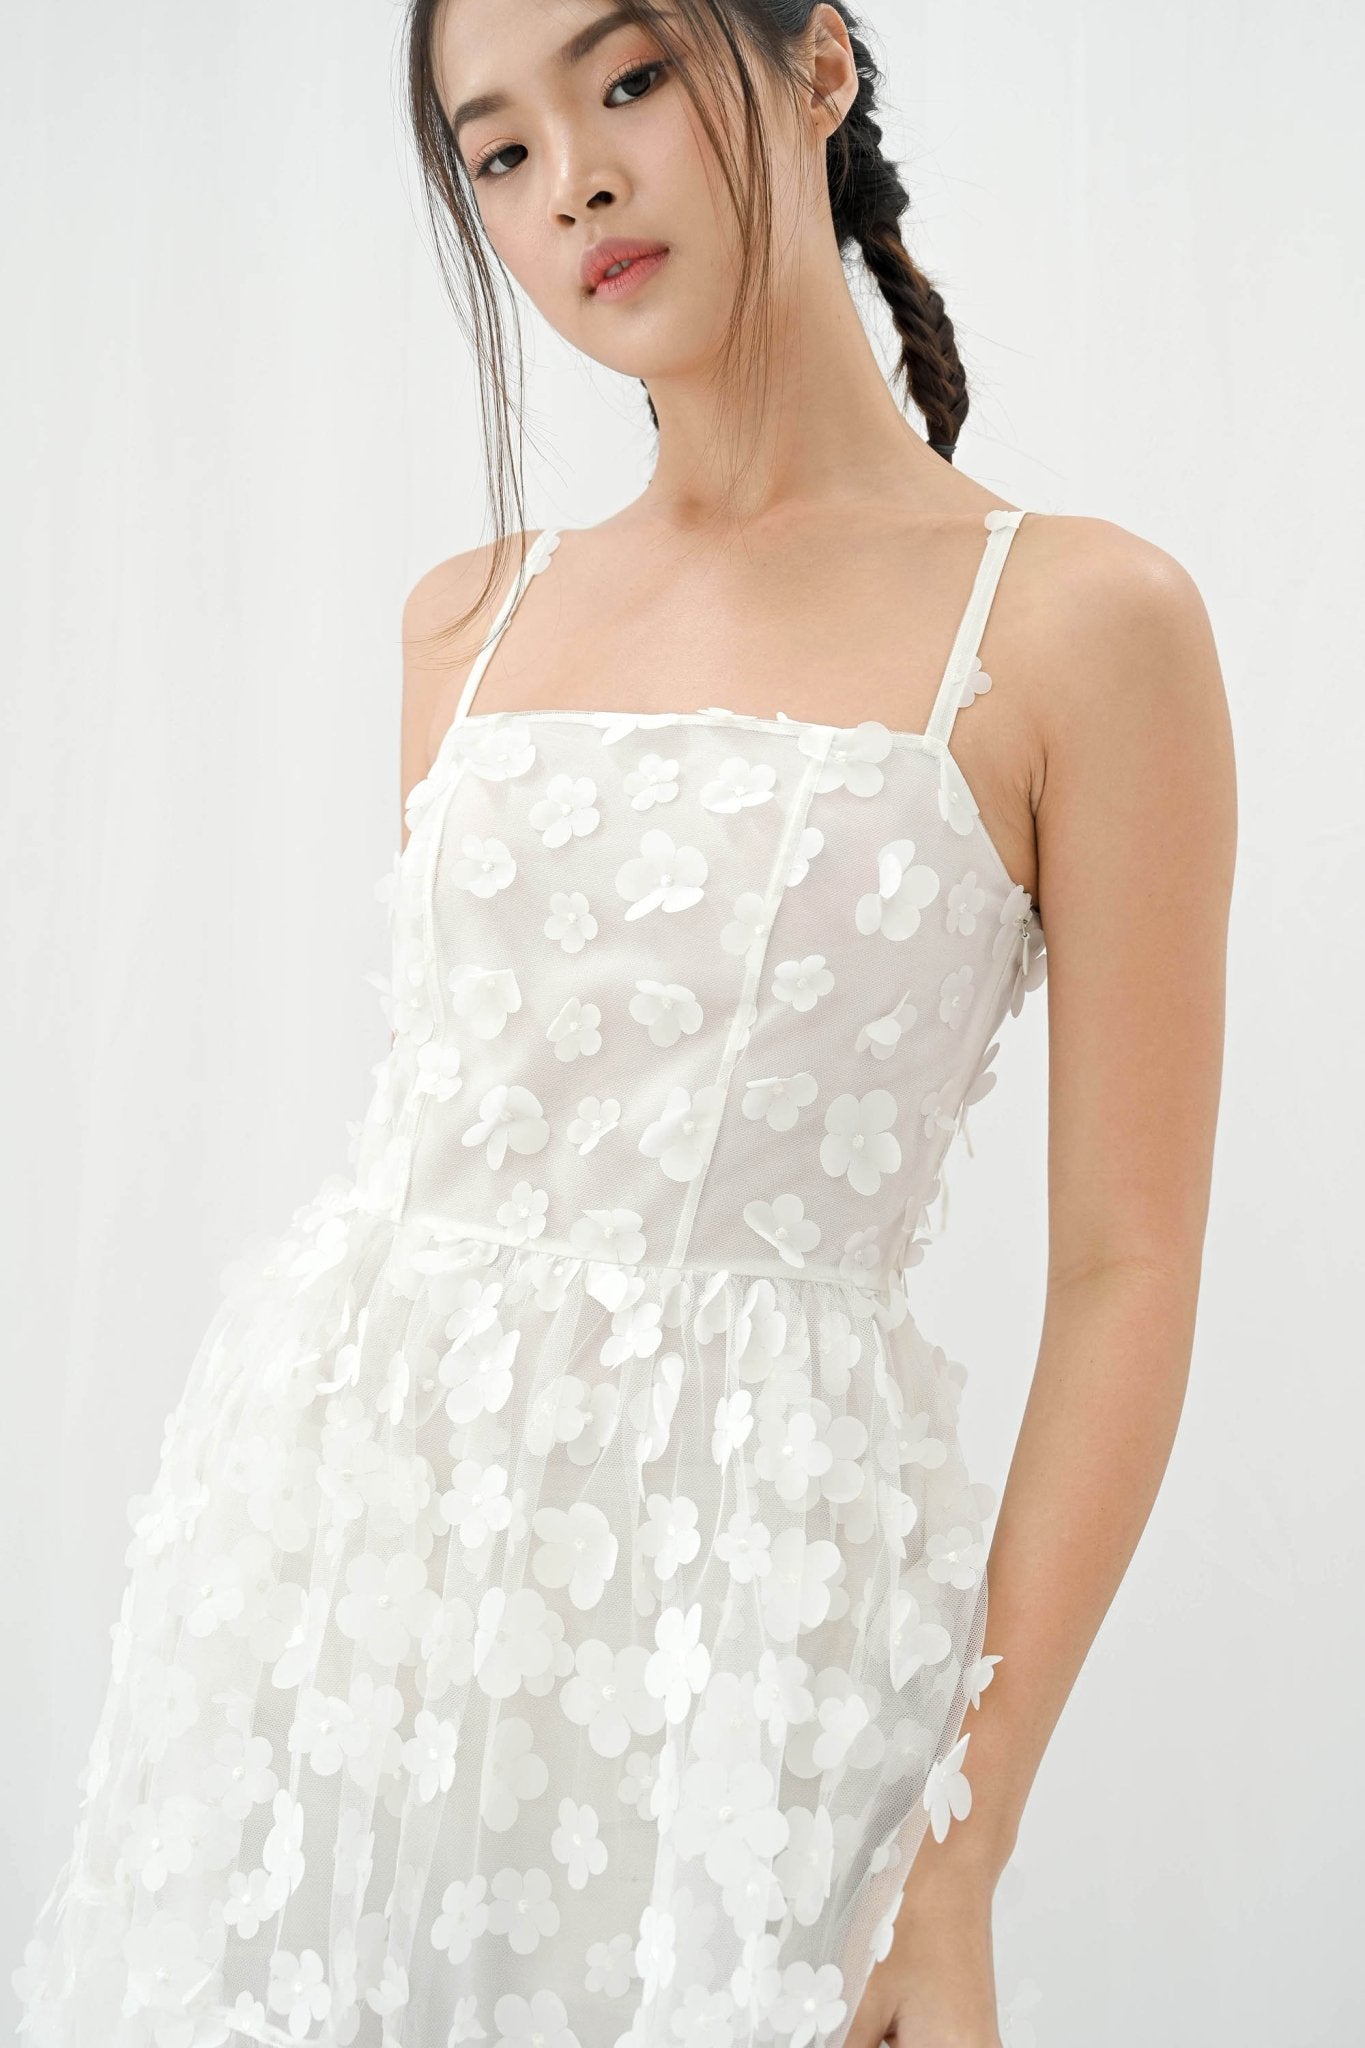 arkitaip - The Daisy Mini Slip Dress in white